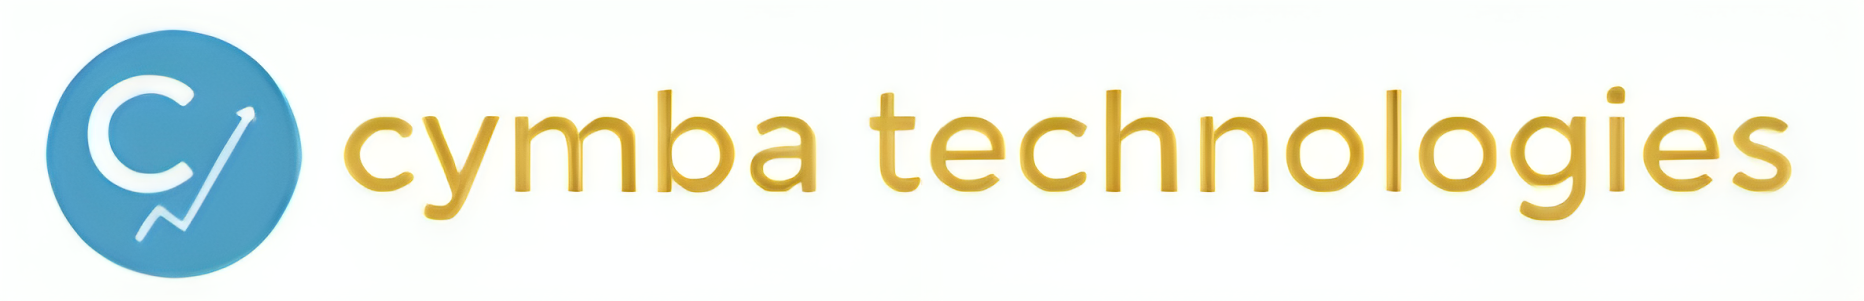 cymba-technologies-logo